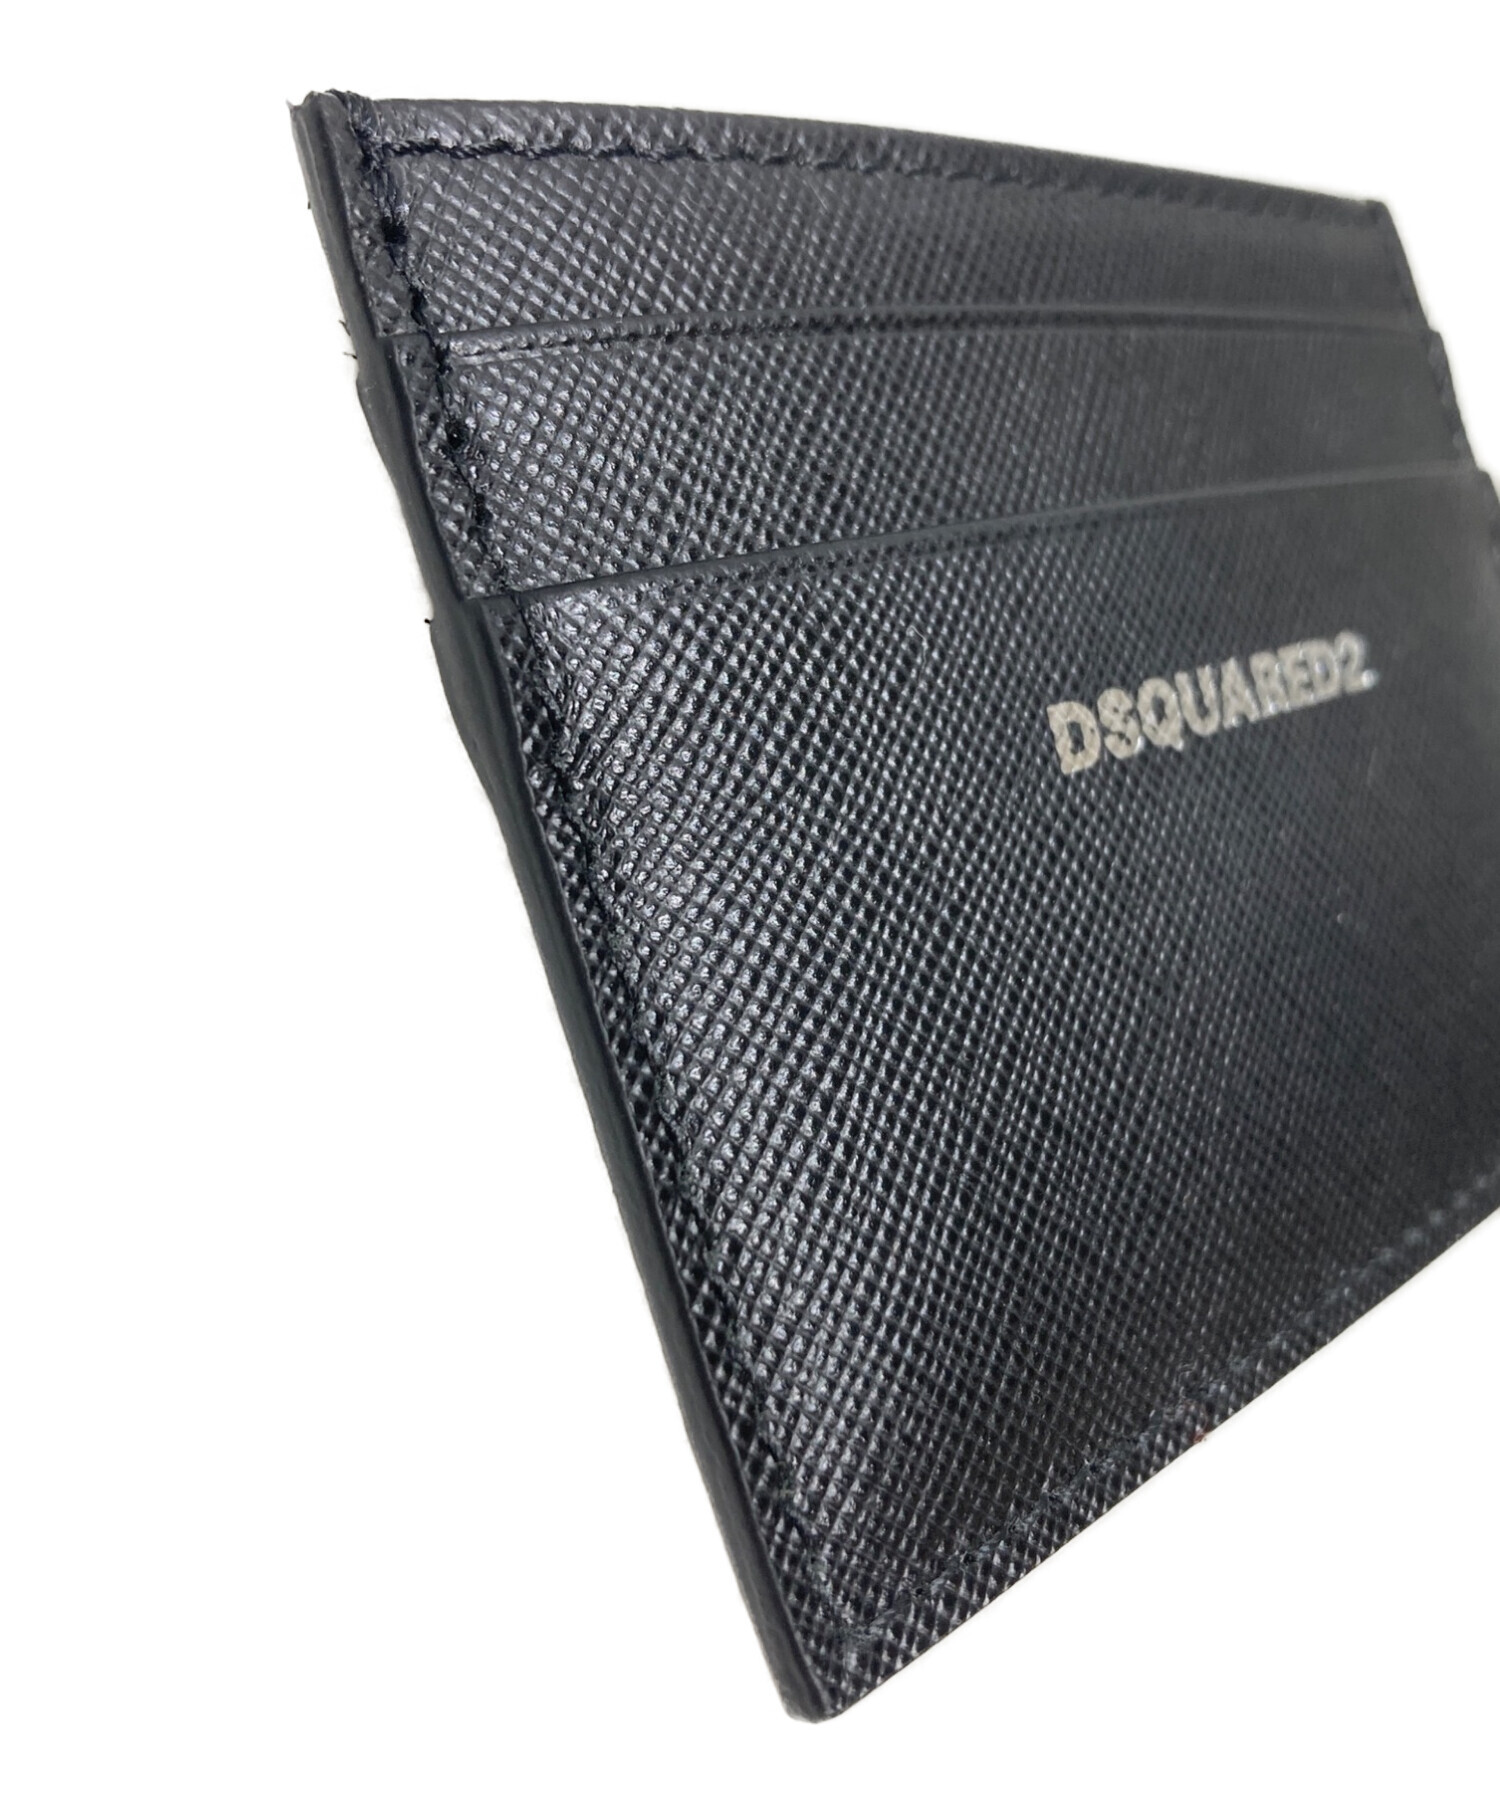 DSQUARED2 (ディースクエアード) カードケース ブラック